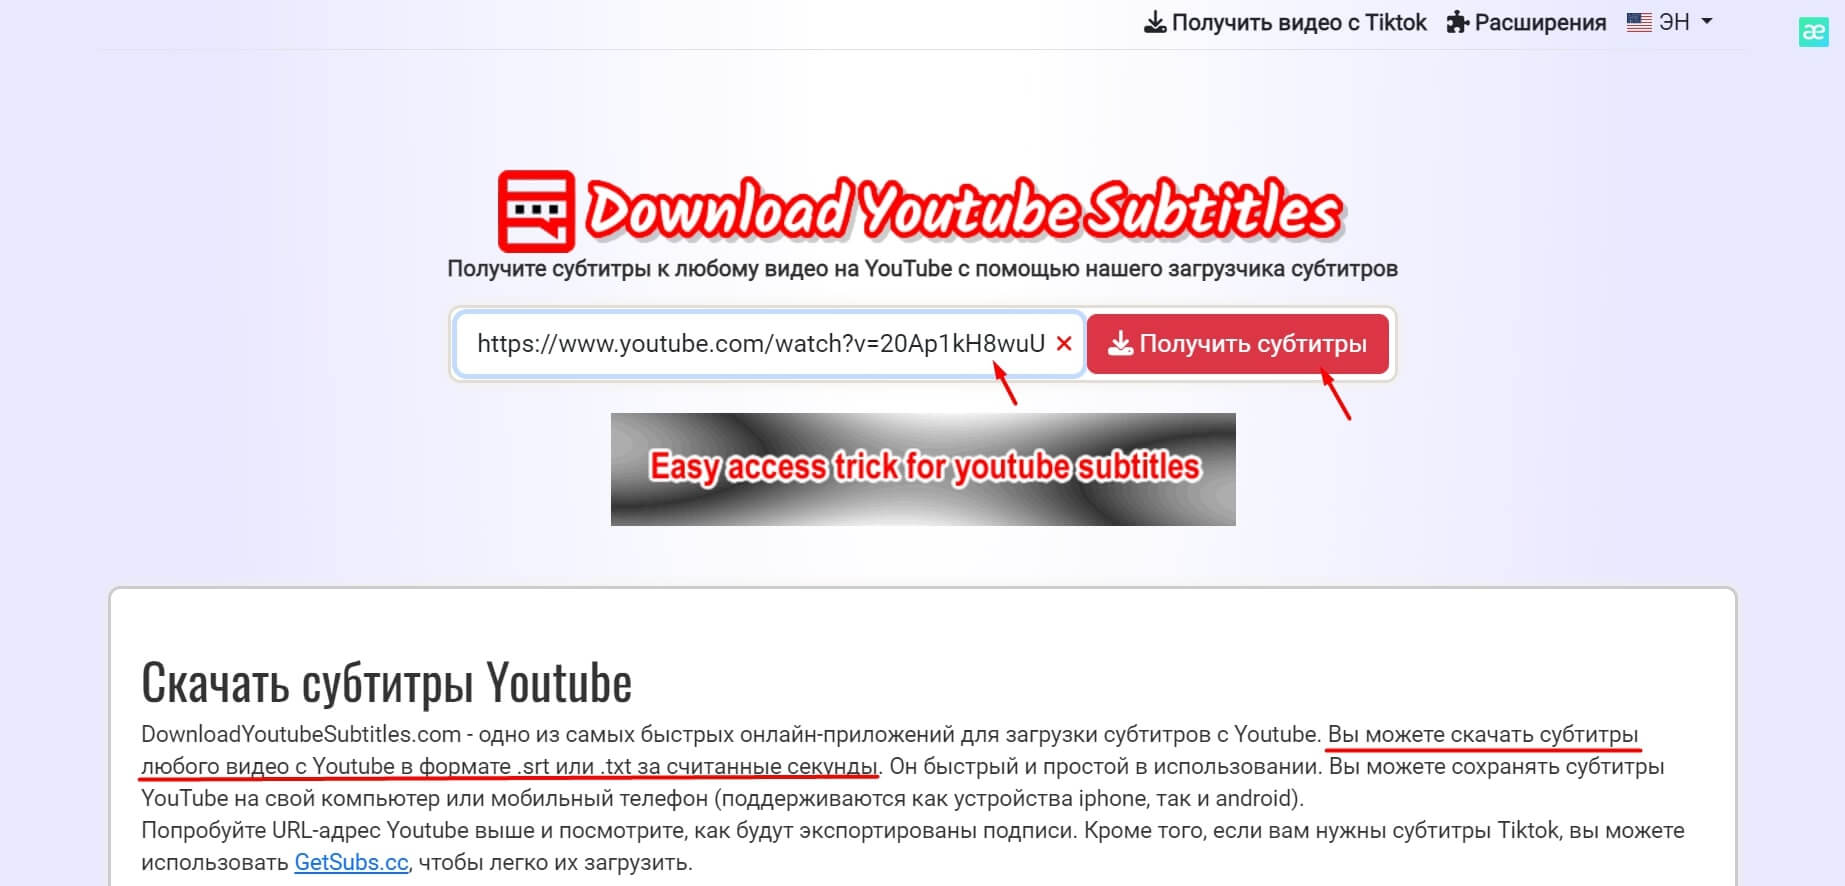 Downloader YouTube Subtitle